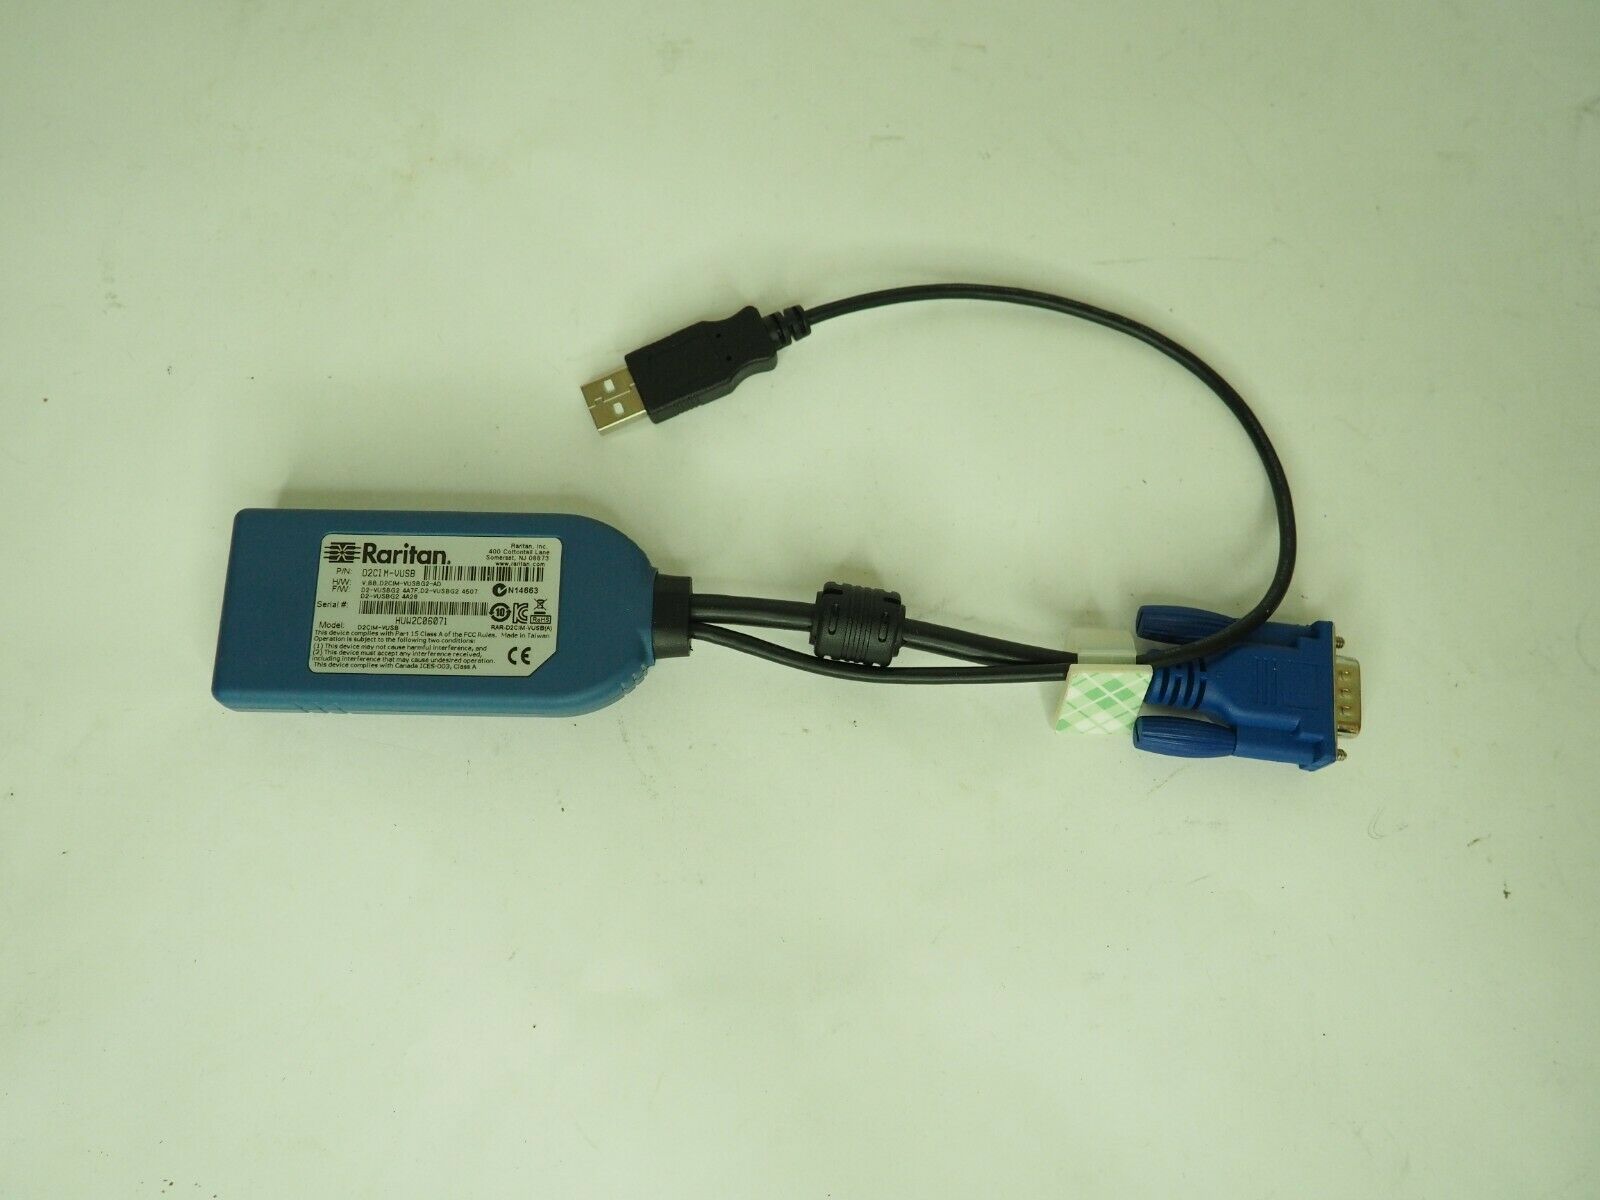 Raritan D2cim-vusb Vga + Usb Kvm Switch Cable Adapter Virtual Media Cable Module